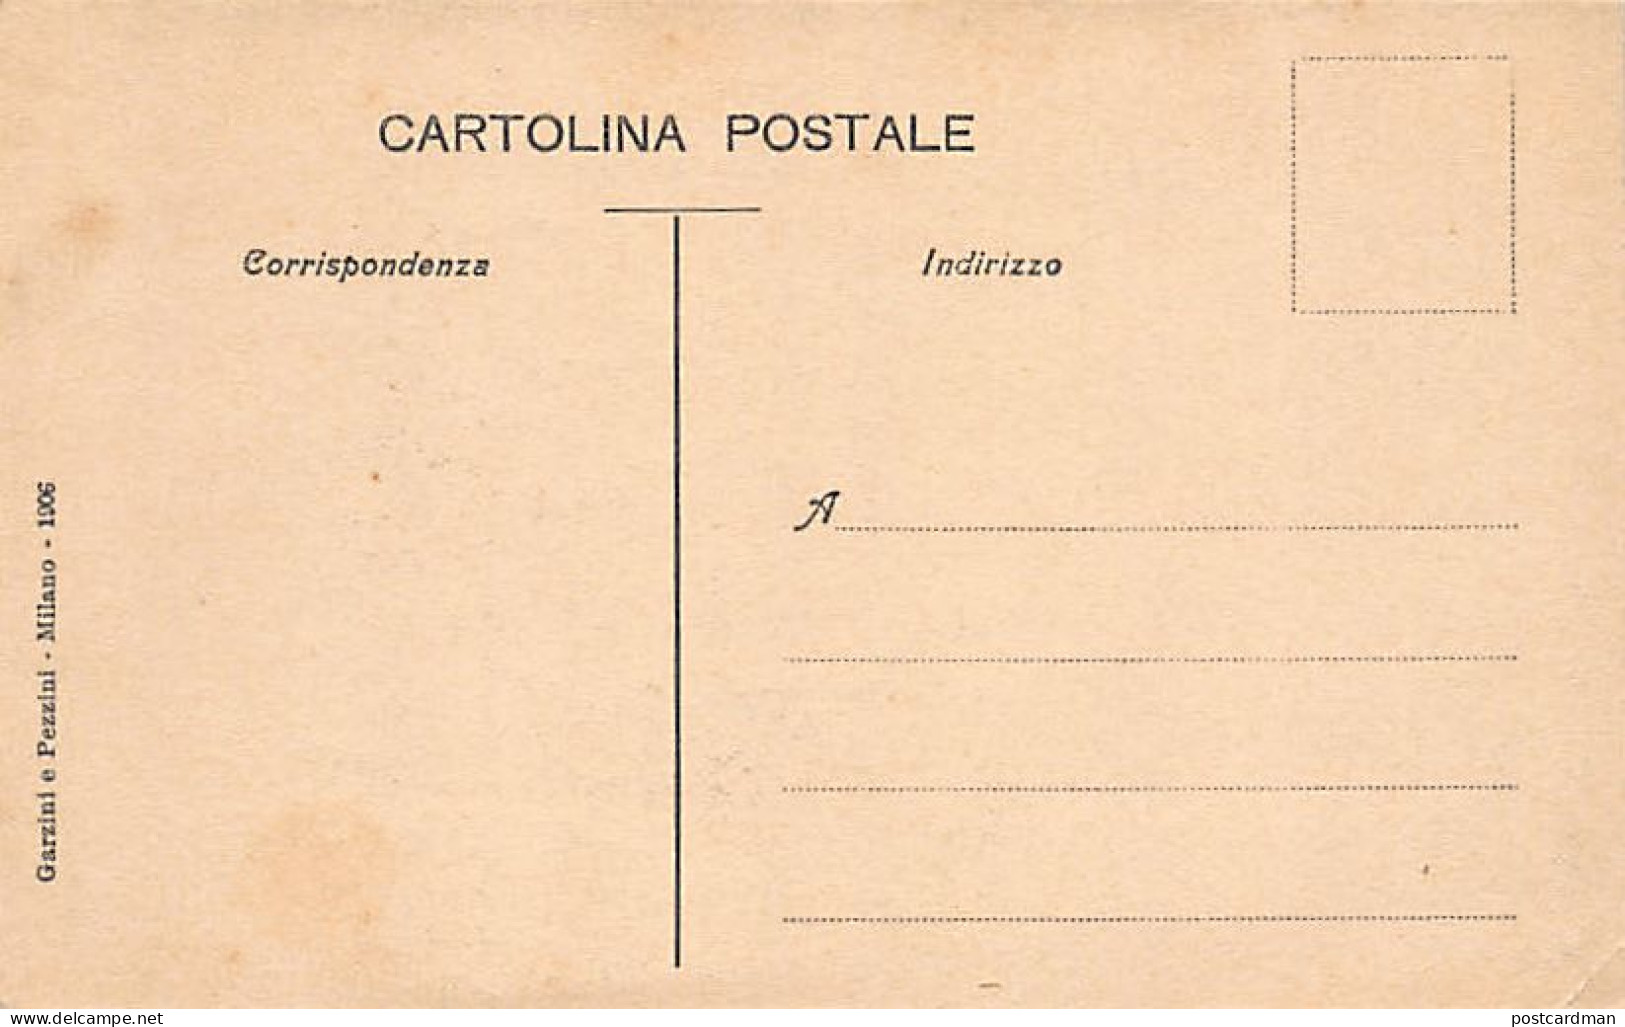 MILANO - La Commissione Dei Postelegrafici Di Parigi - 5 Novembre 1905 - Milano (Milan)